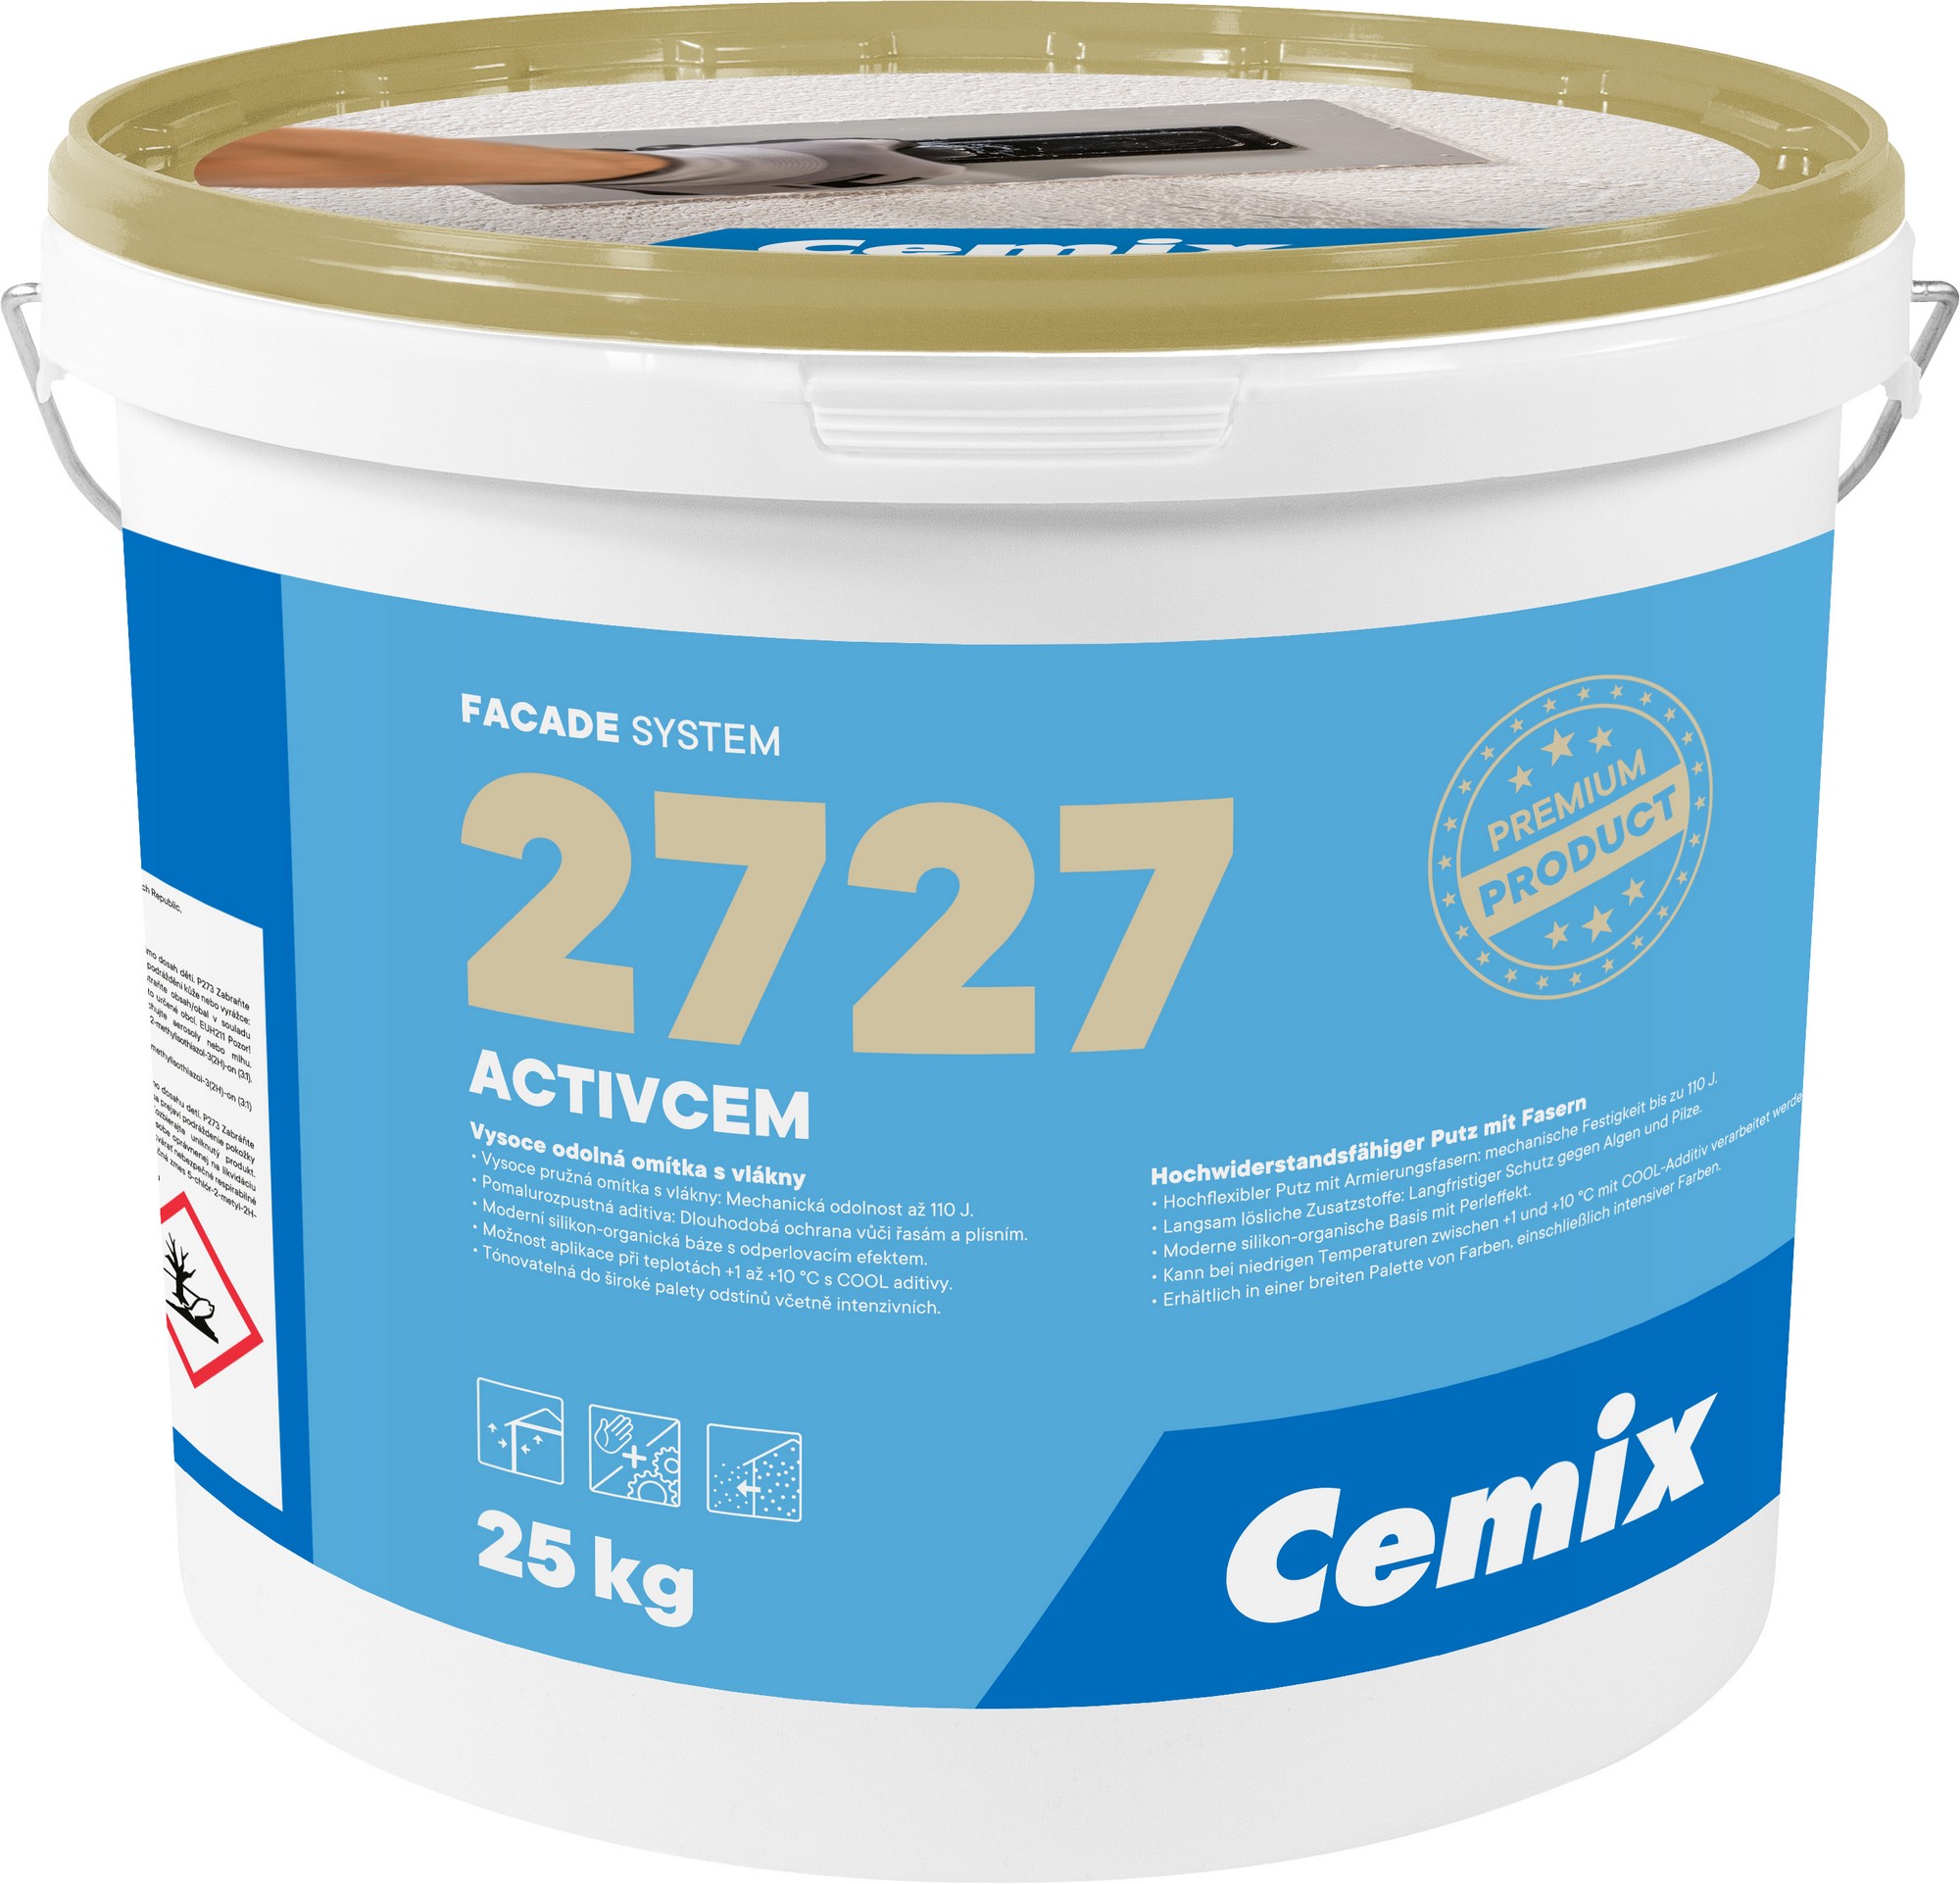 Omítka vysokopevnostní Cemix 2727 ActivCem Z 2,0 mm bezpř., 25 kg